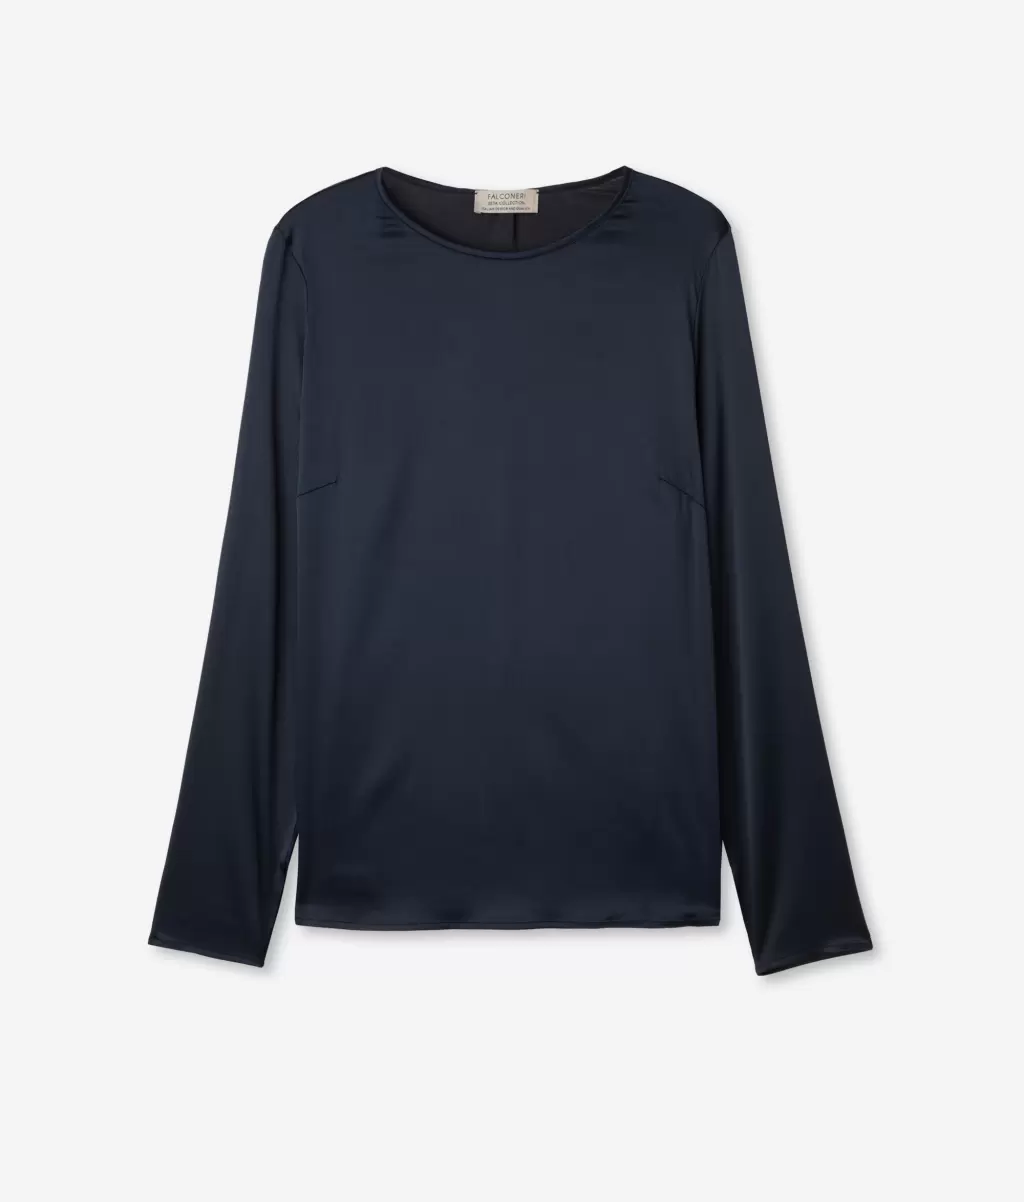 Falconeri Kobieta Koszule I Bluzki Bluzka Z Okrągłym Dekoltem Z Satyny Jedwabnej Blue - 4